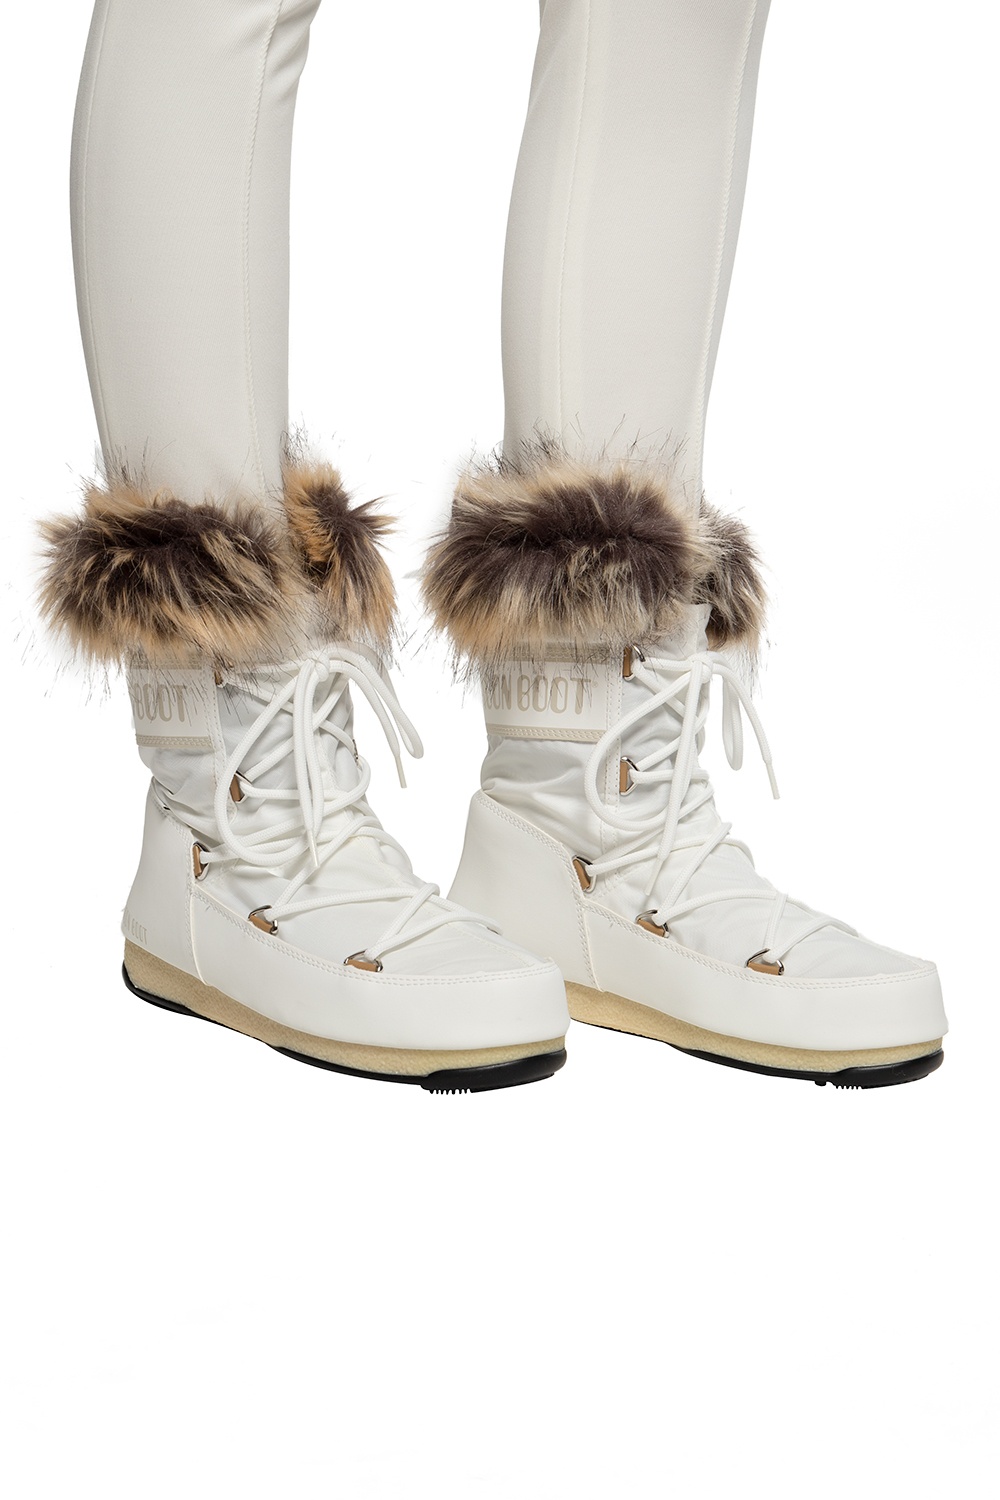 gunstig Observatie Vlekkeloos Geox Children s Shoes Cognac J26CVA - 'Monaco' snow boots Moon Boot -  IetpShops GB